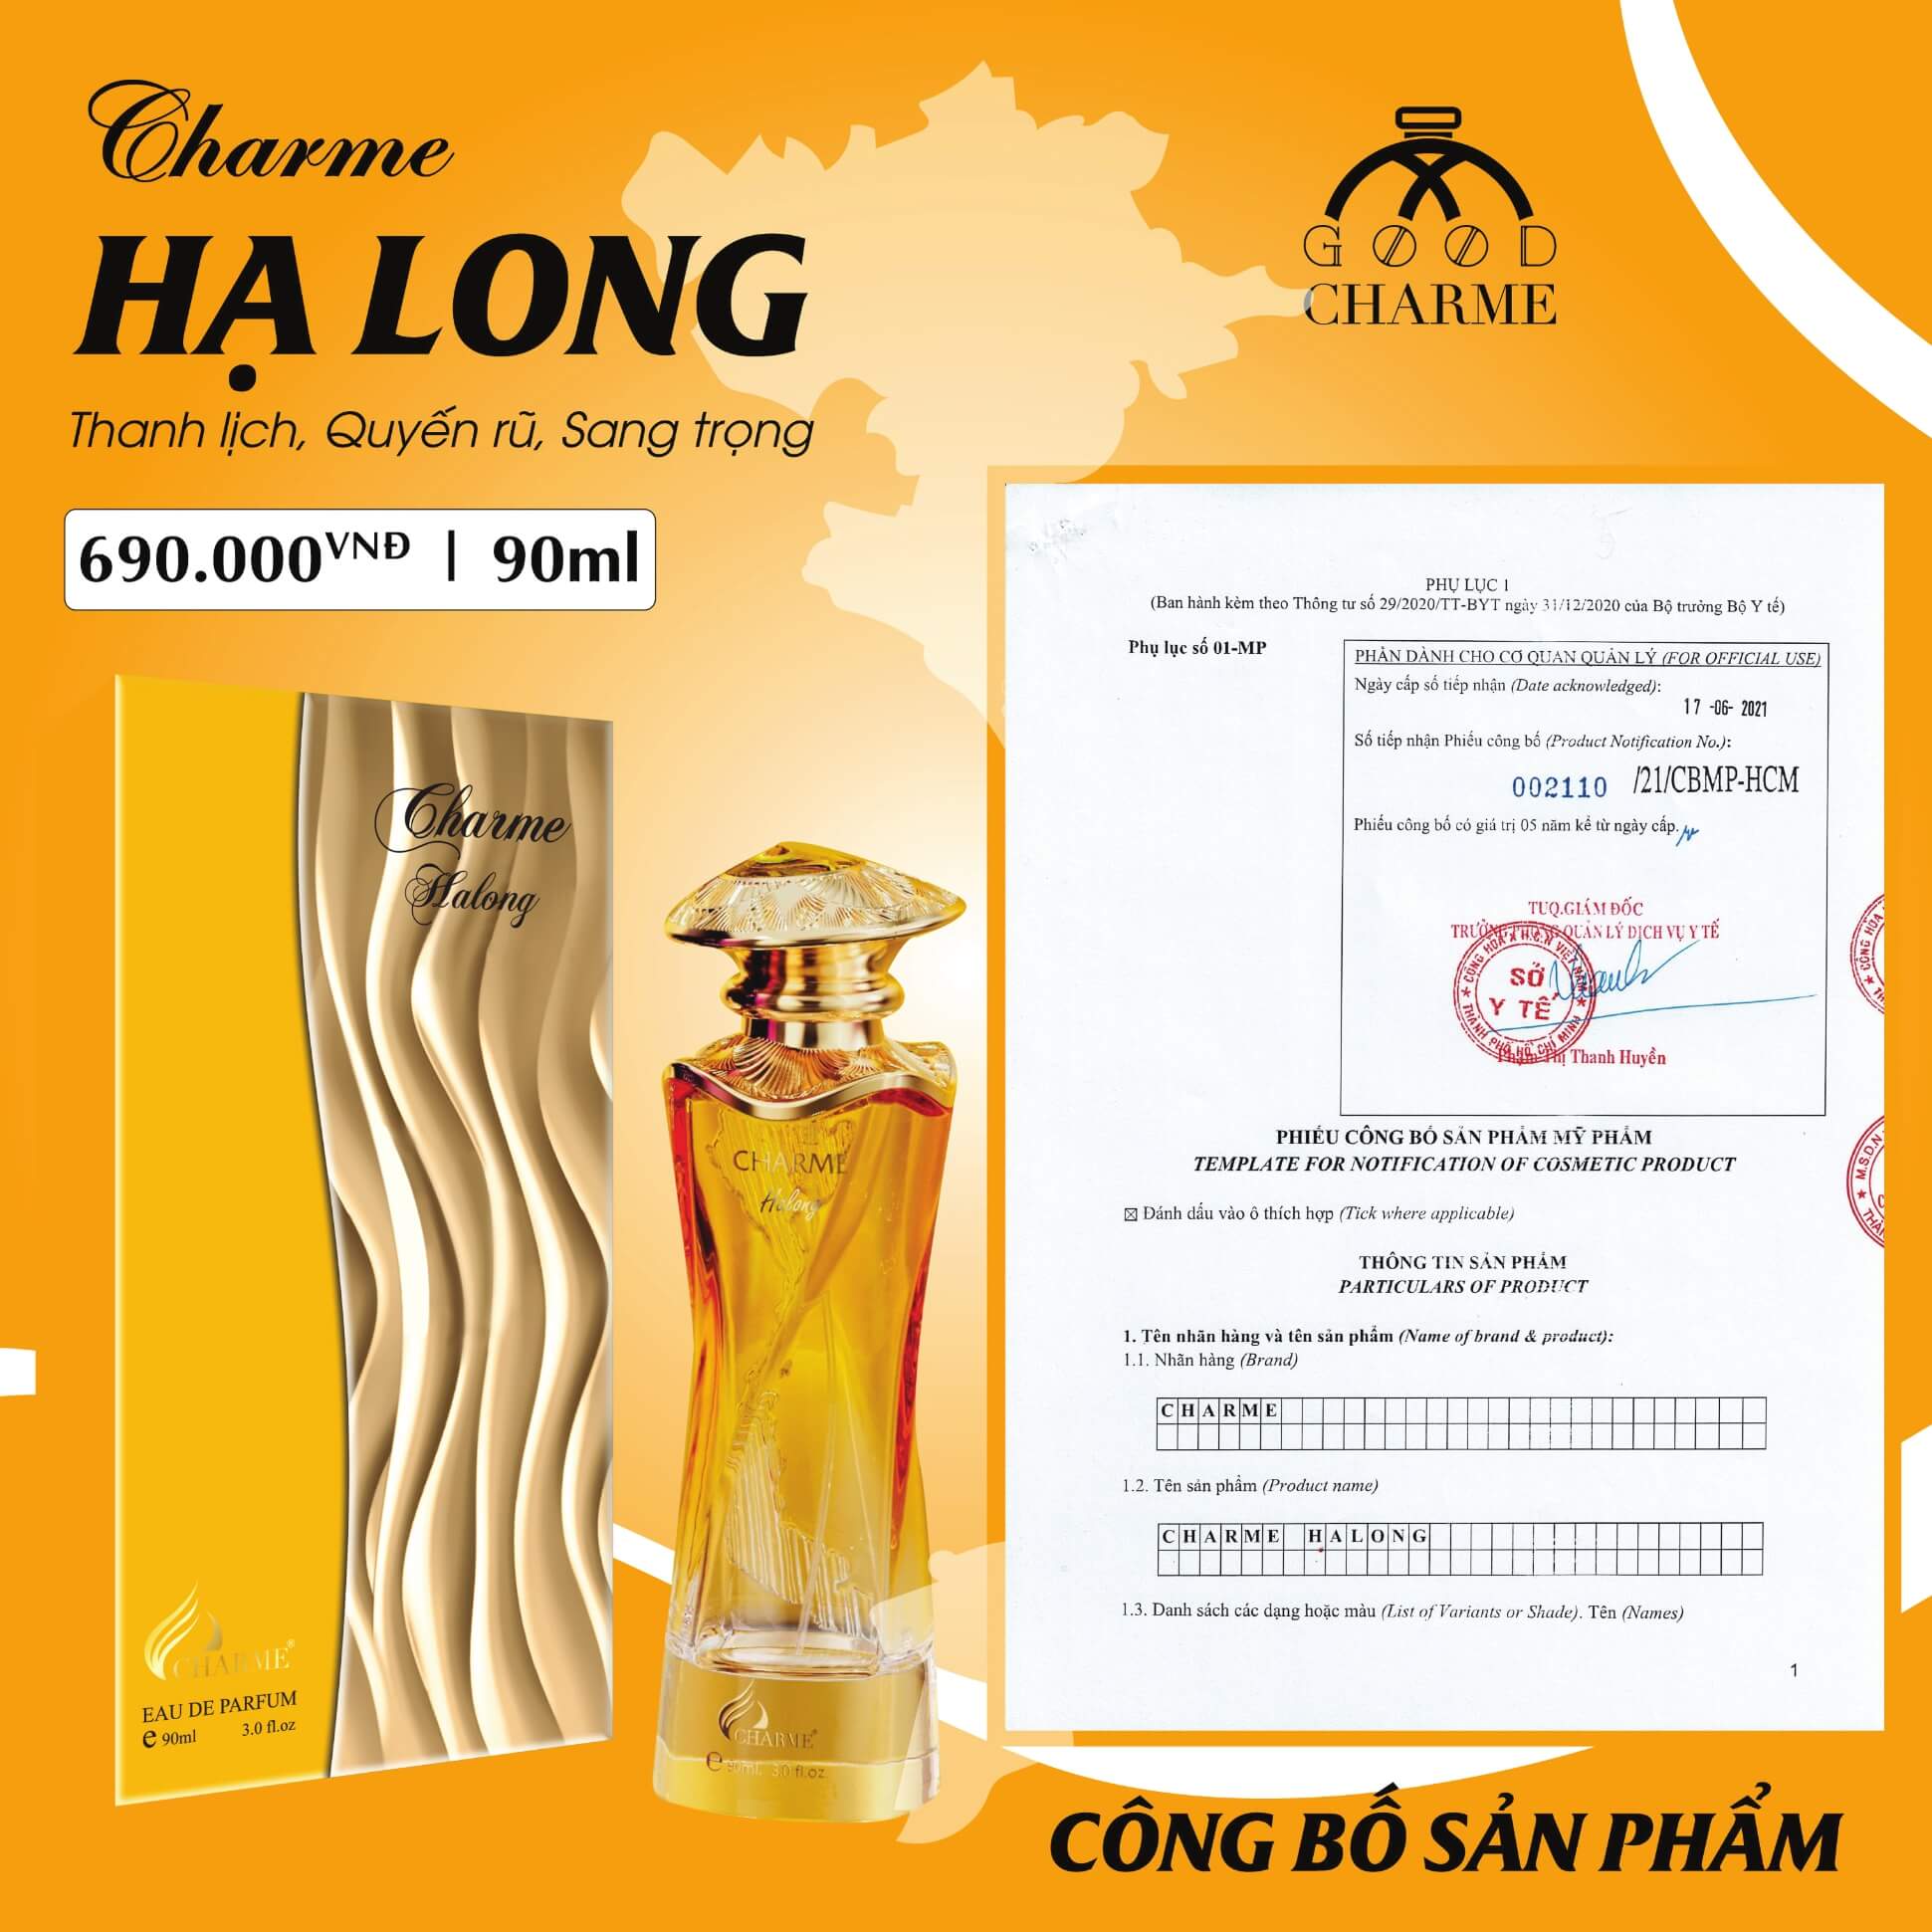 BO CONG BO SAN PHAM GOODCHARME 1 028